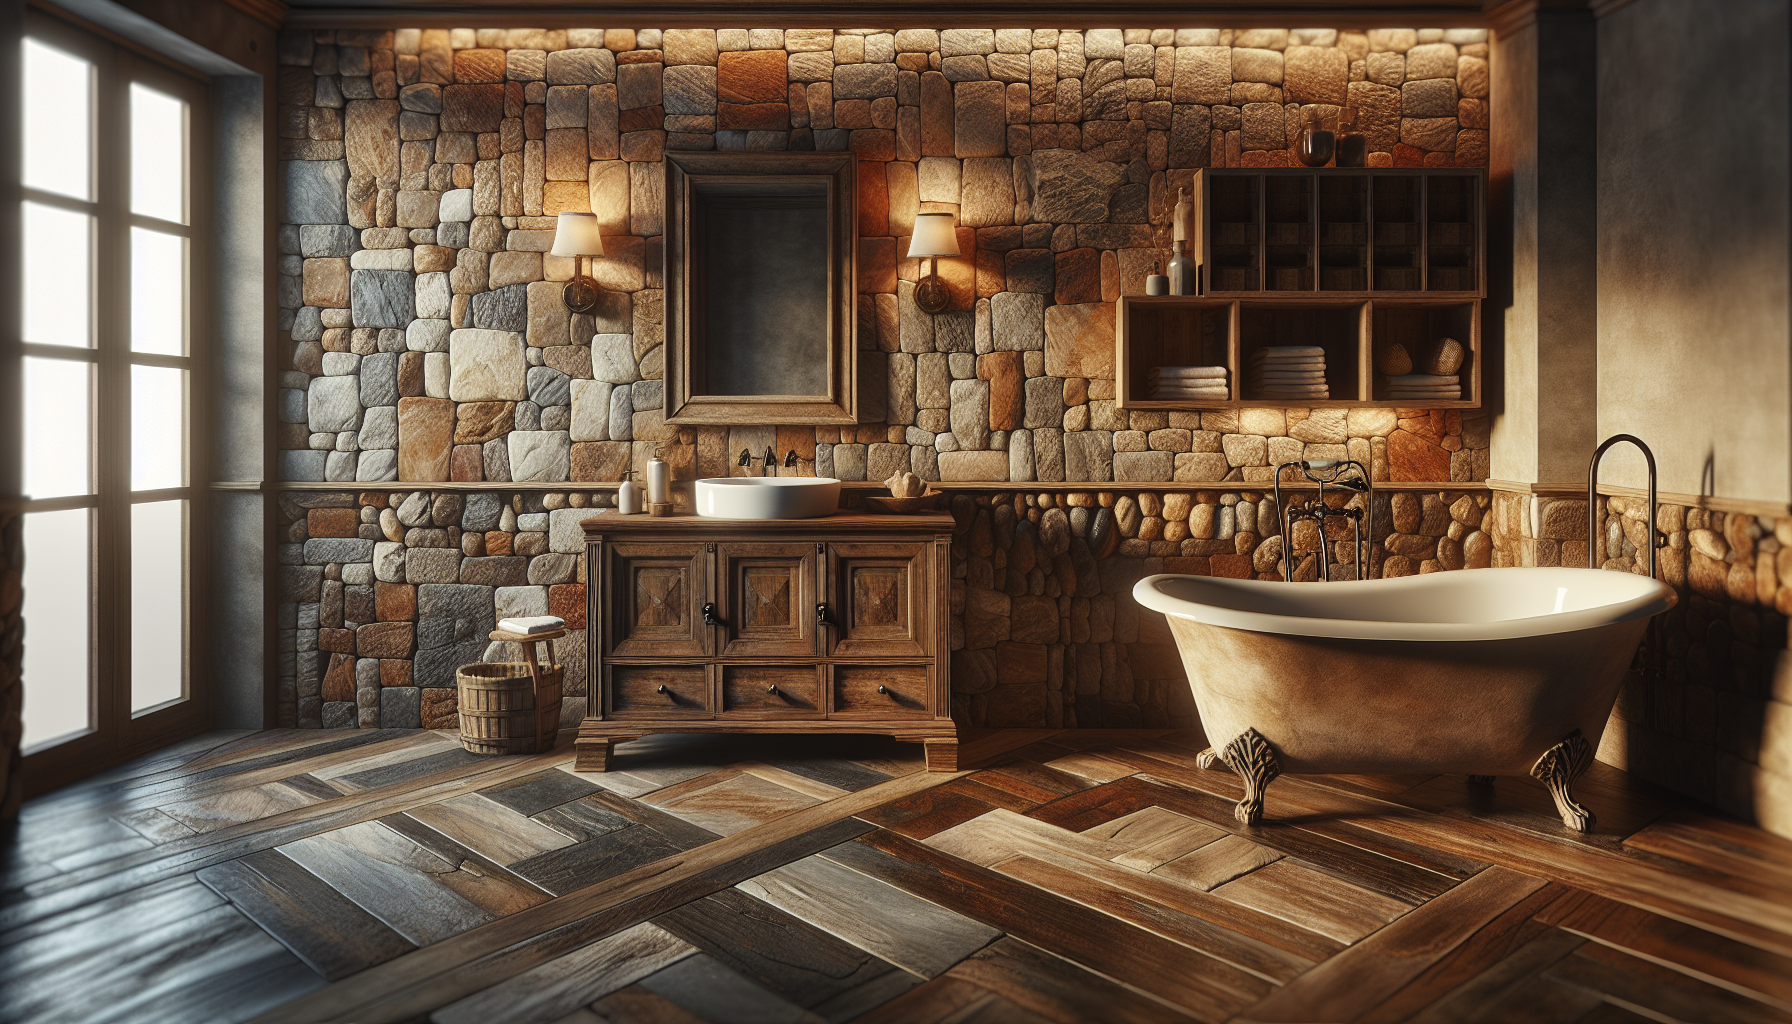 Naturstein und Holz als warme Akzente in Badeinrichtungen